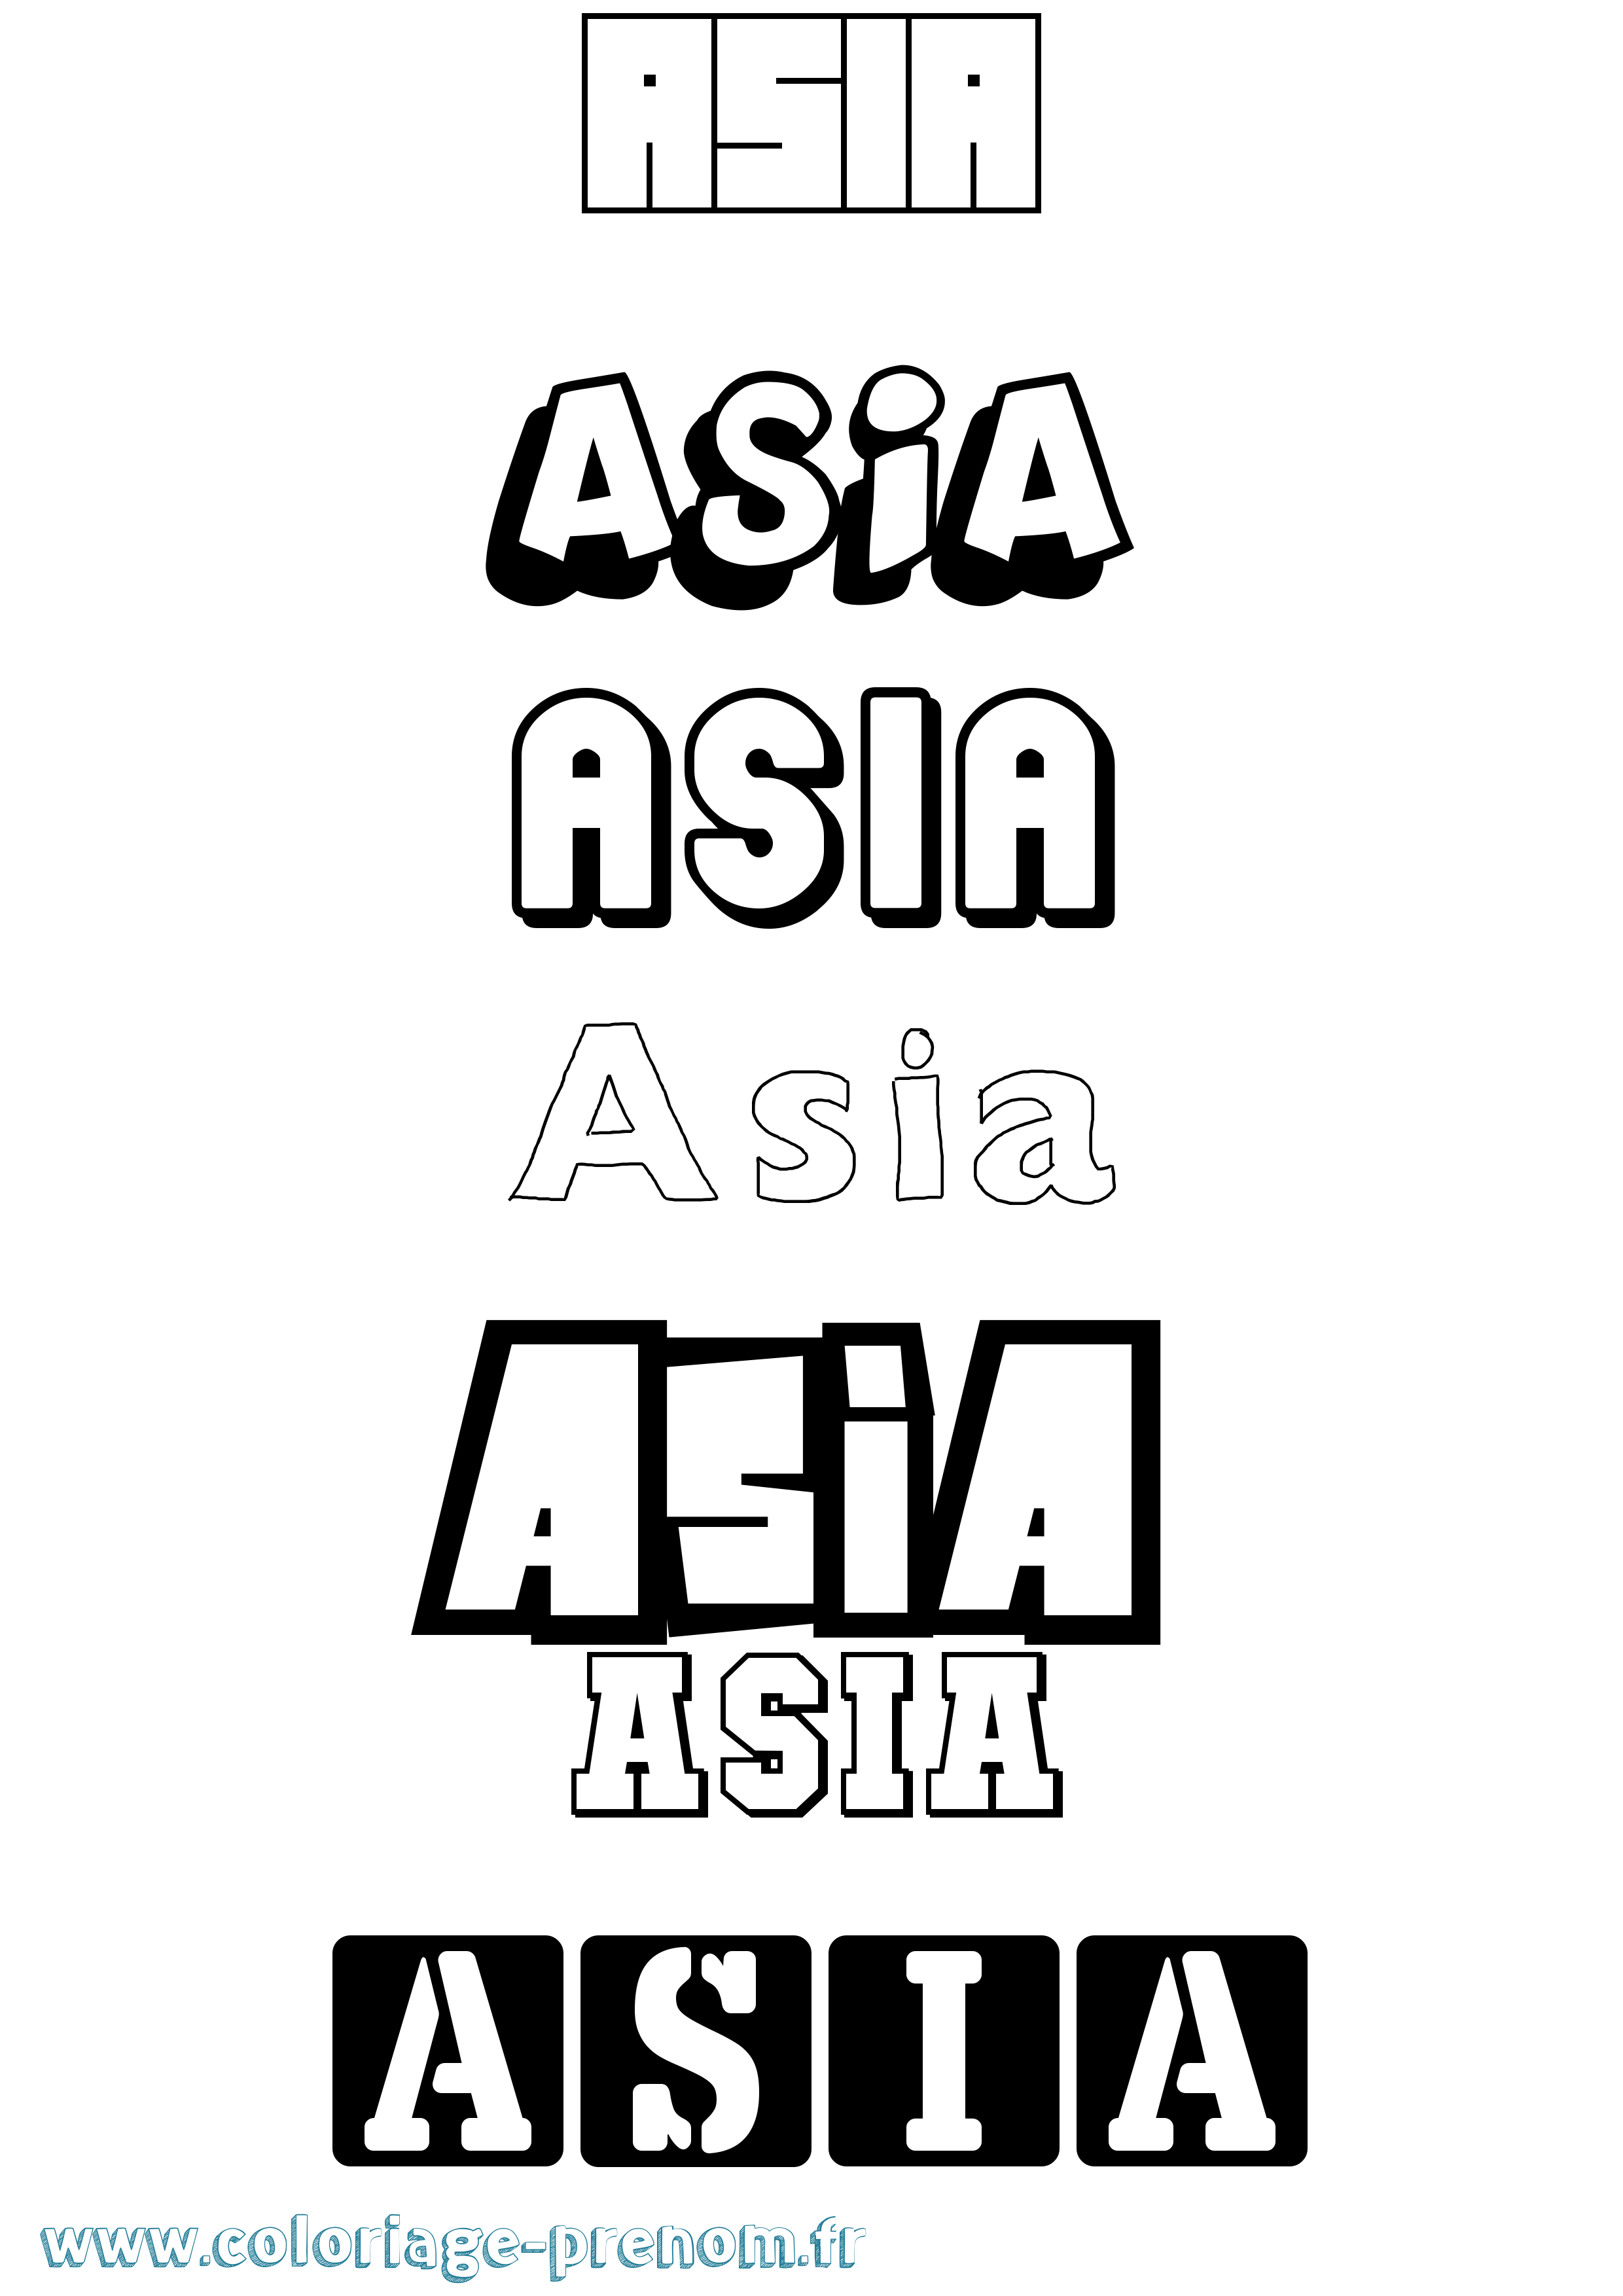 Coloriage prénom Asia Simple